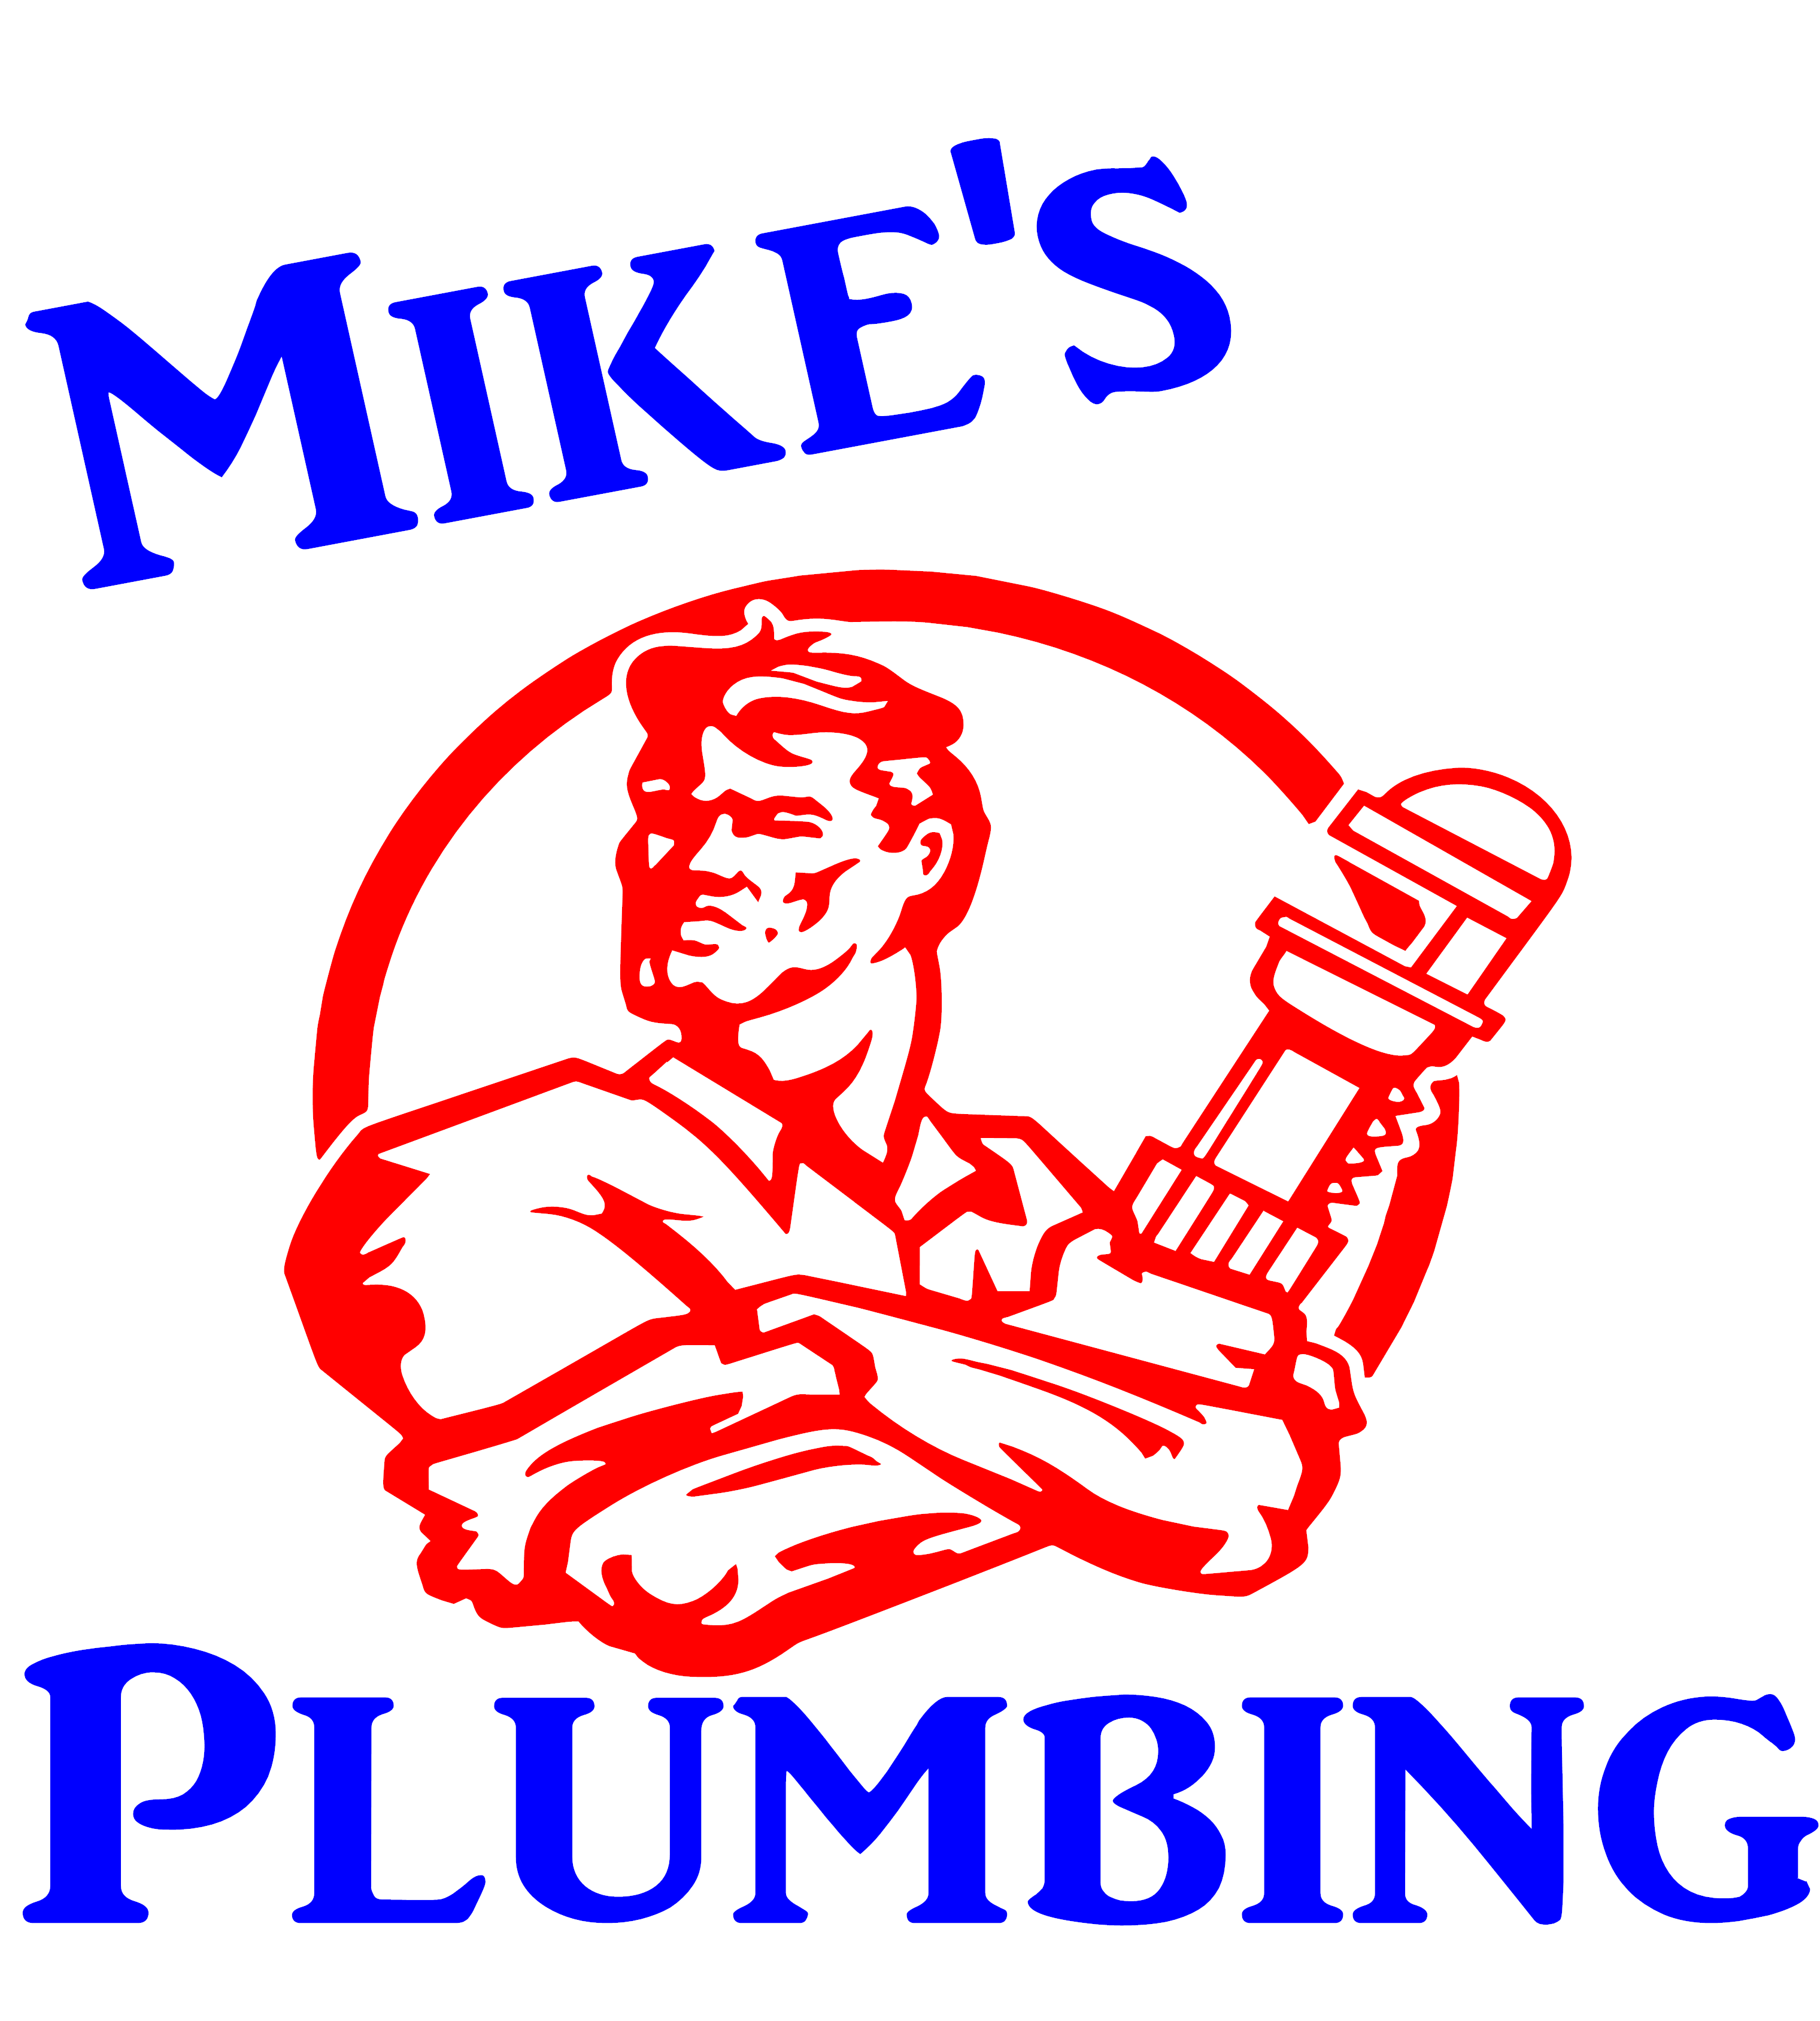 Mikes plumbing